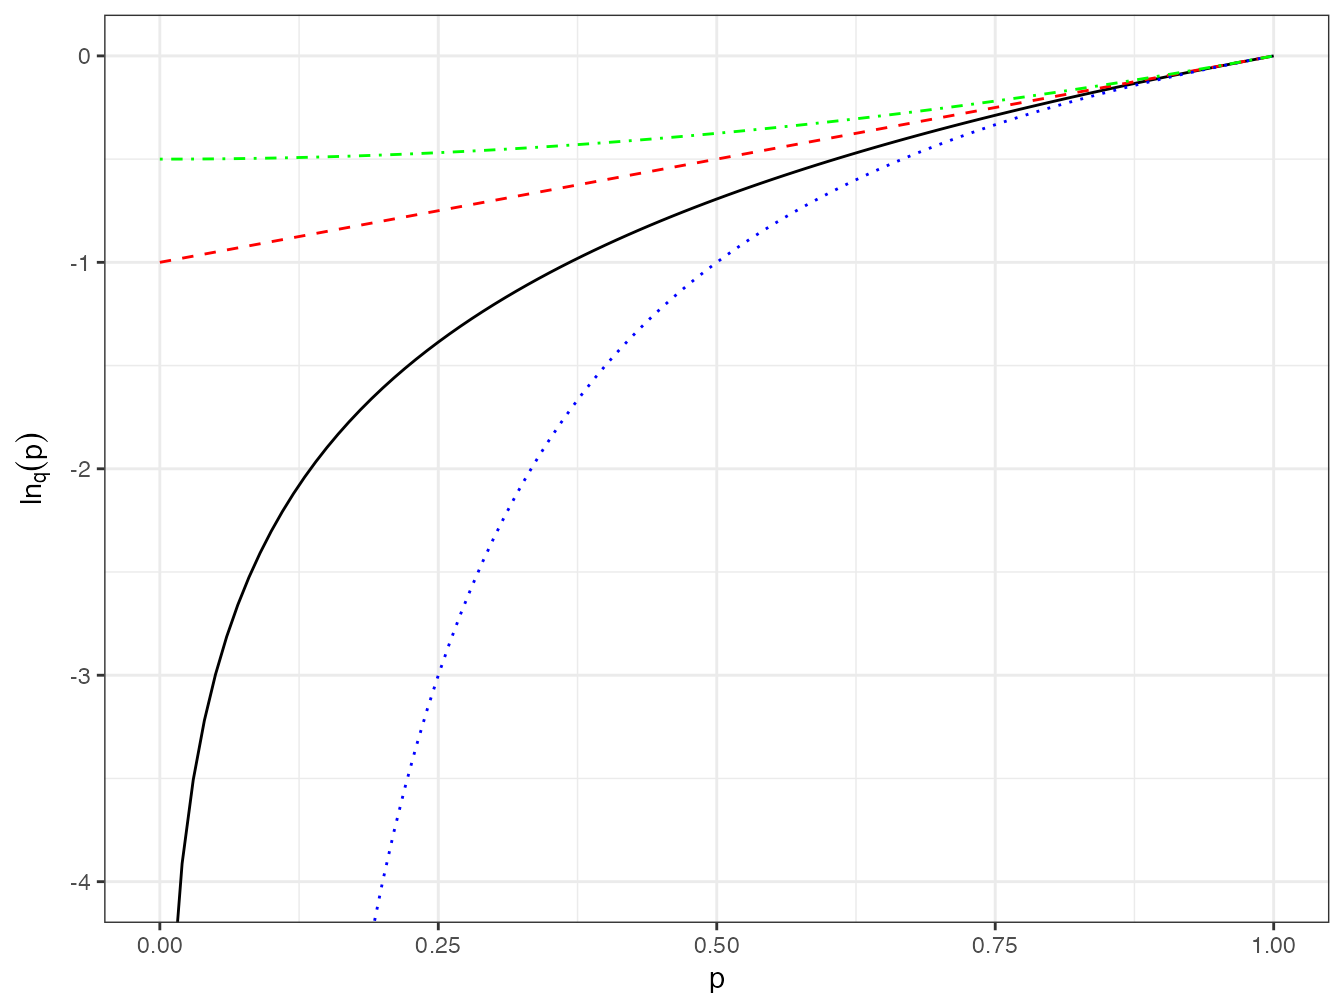 Valeur du logarithme d’ordre \(q\) de probabilités entre 0 et 1 pour différentes valeurs de \(q\) : \(q = 0\) (pointillés longs rouges), la courbe est une droite ; \(q = 1\) (trait plein) : logarithme naturel ; \(q = 2\) (pointillés courts bleus) : la courbe a la même forme que le logarithme naturel pour les valeurs positives de \(q\) ; \(q =-1\) (pointillés alternés verts) : la courbe est convexe pour les valeurs négatives de \(q\).